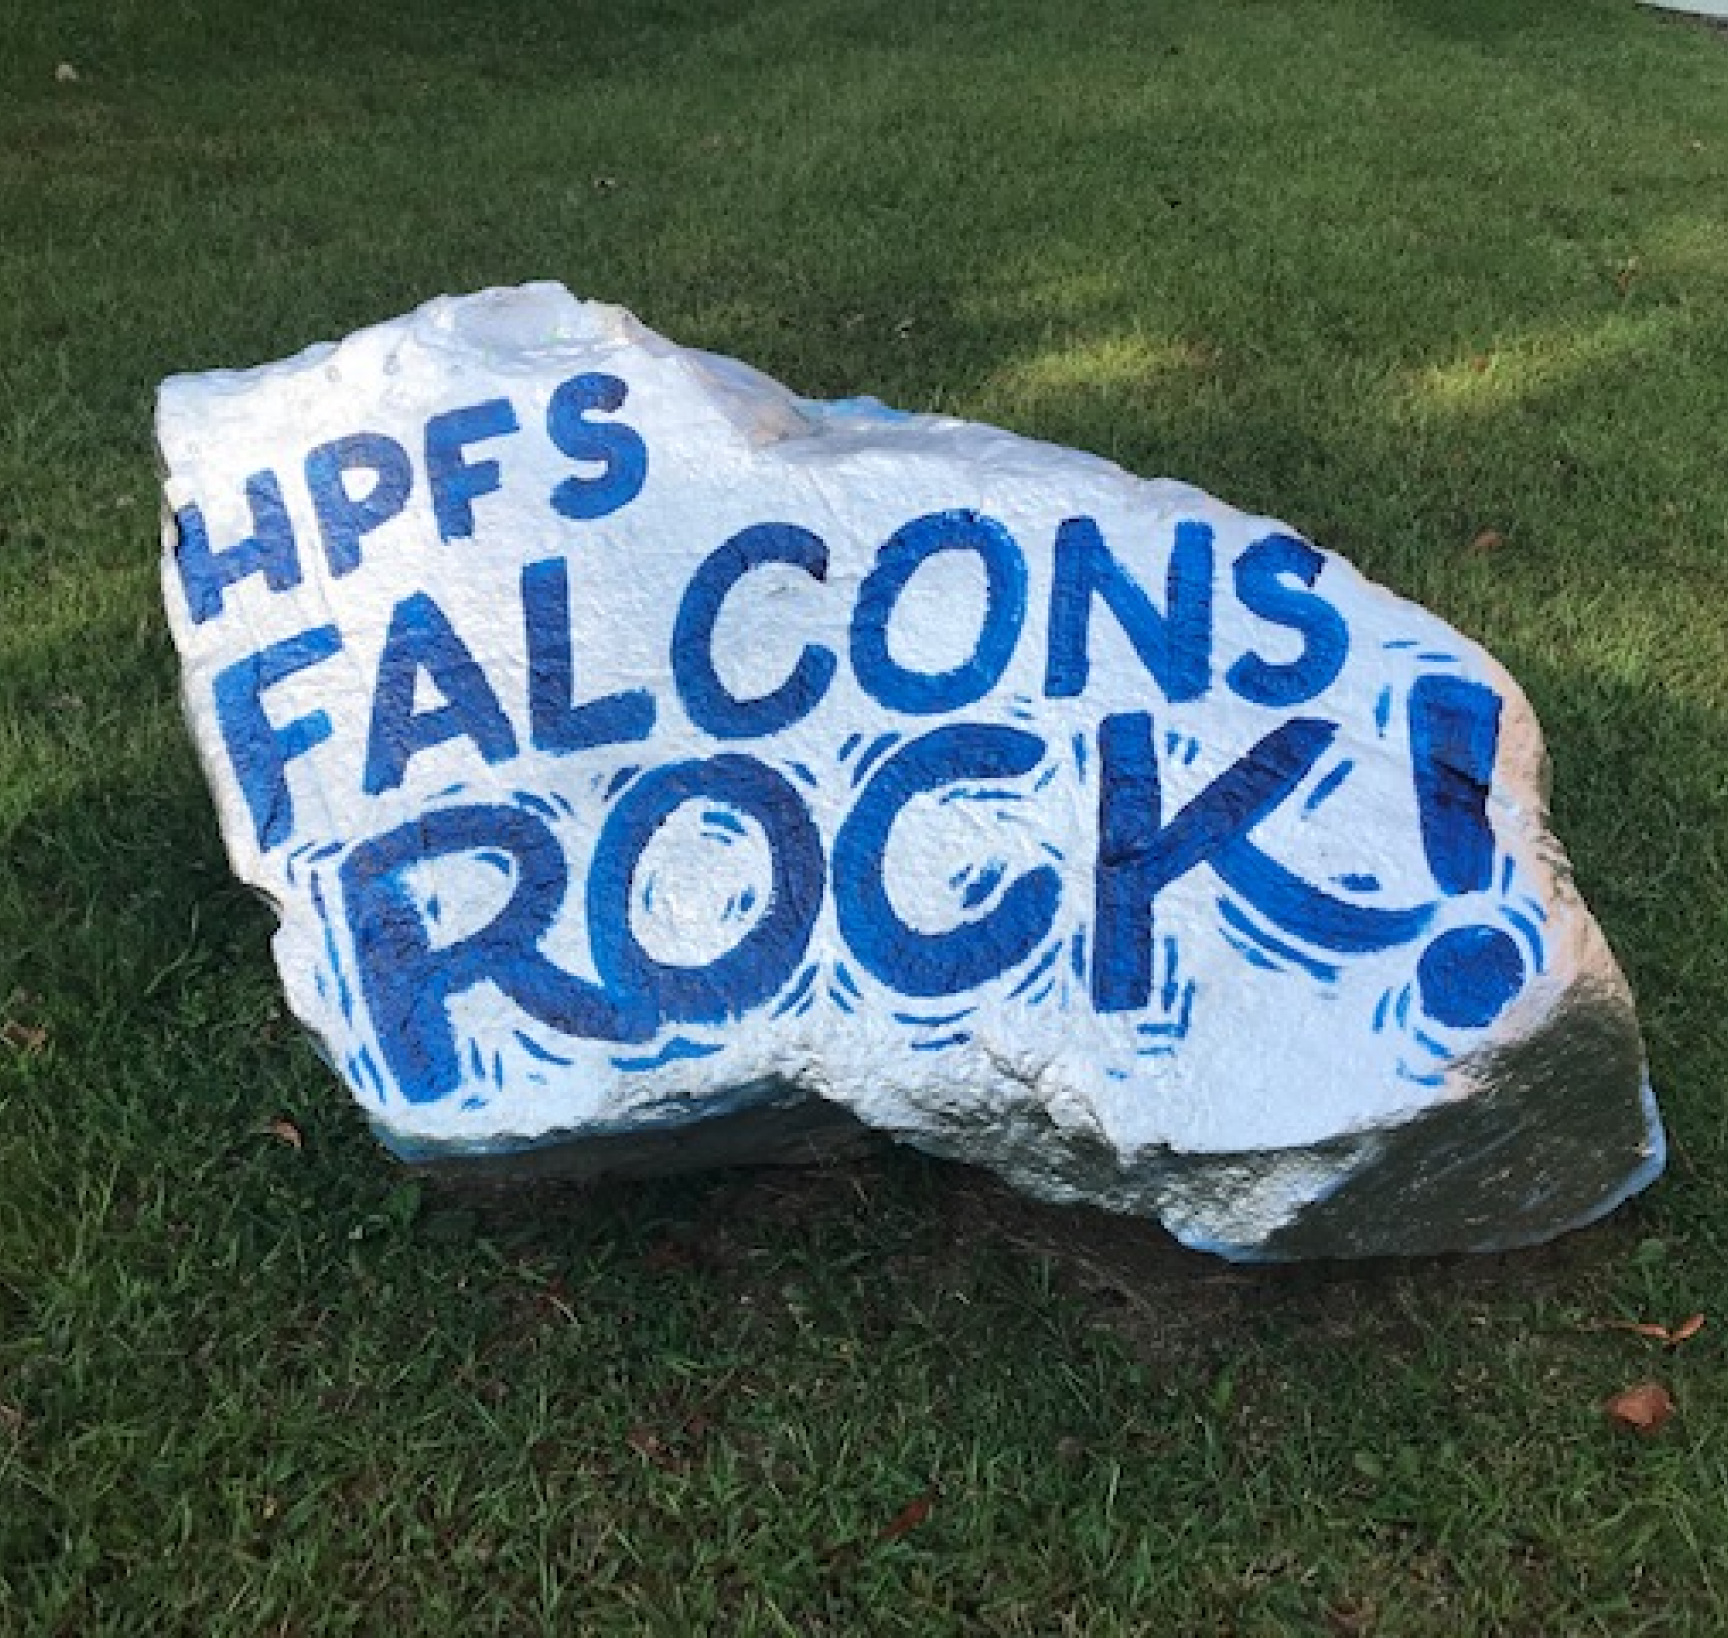 HPFS Falcons Rock!